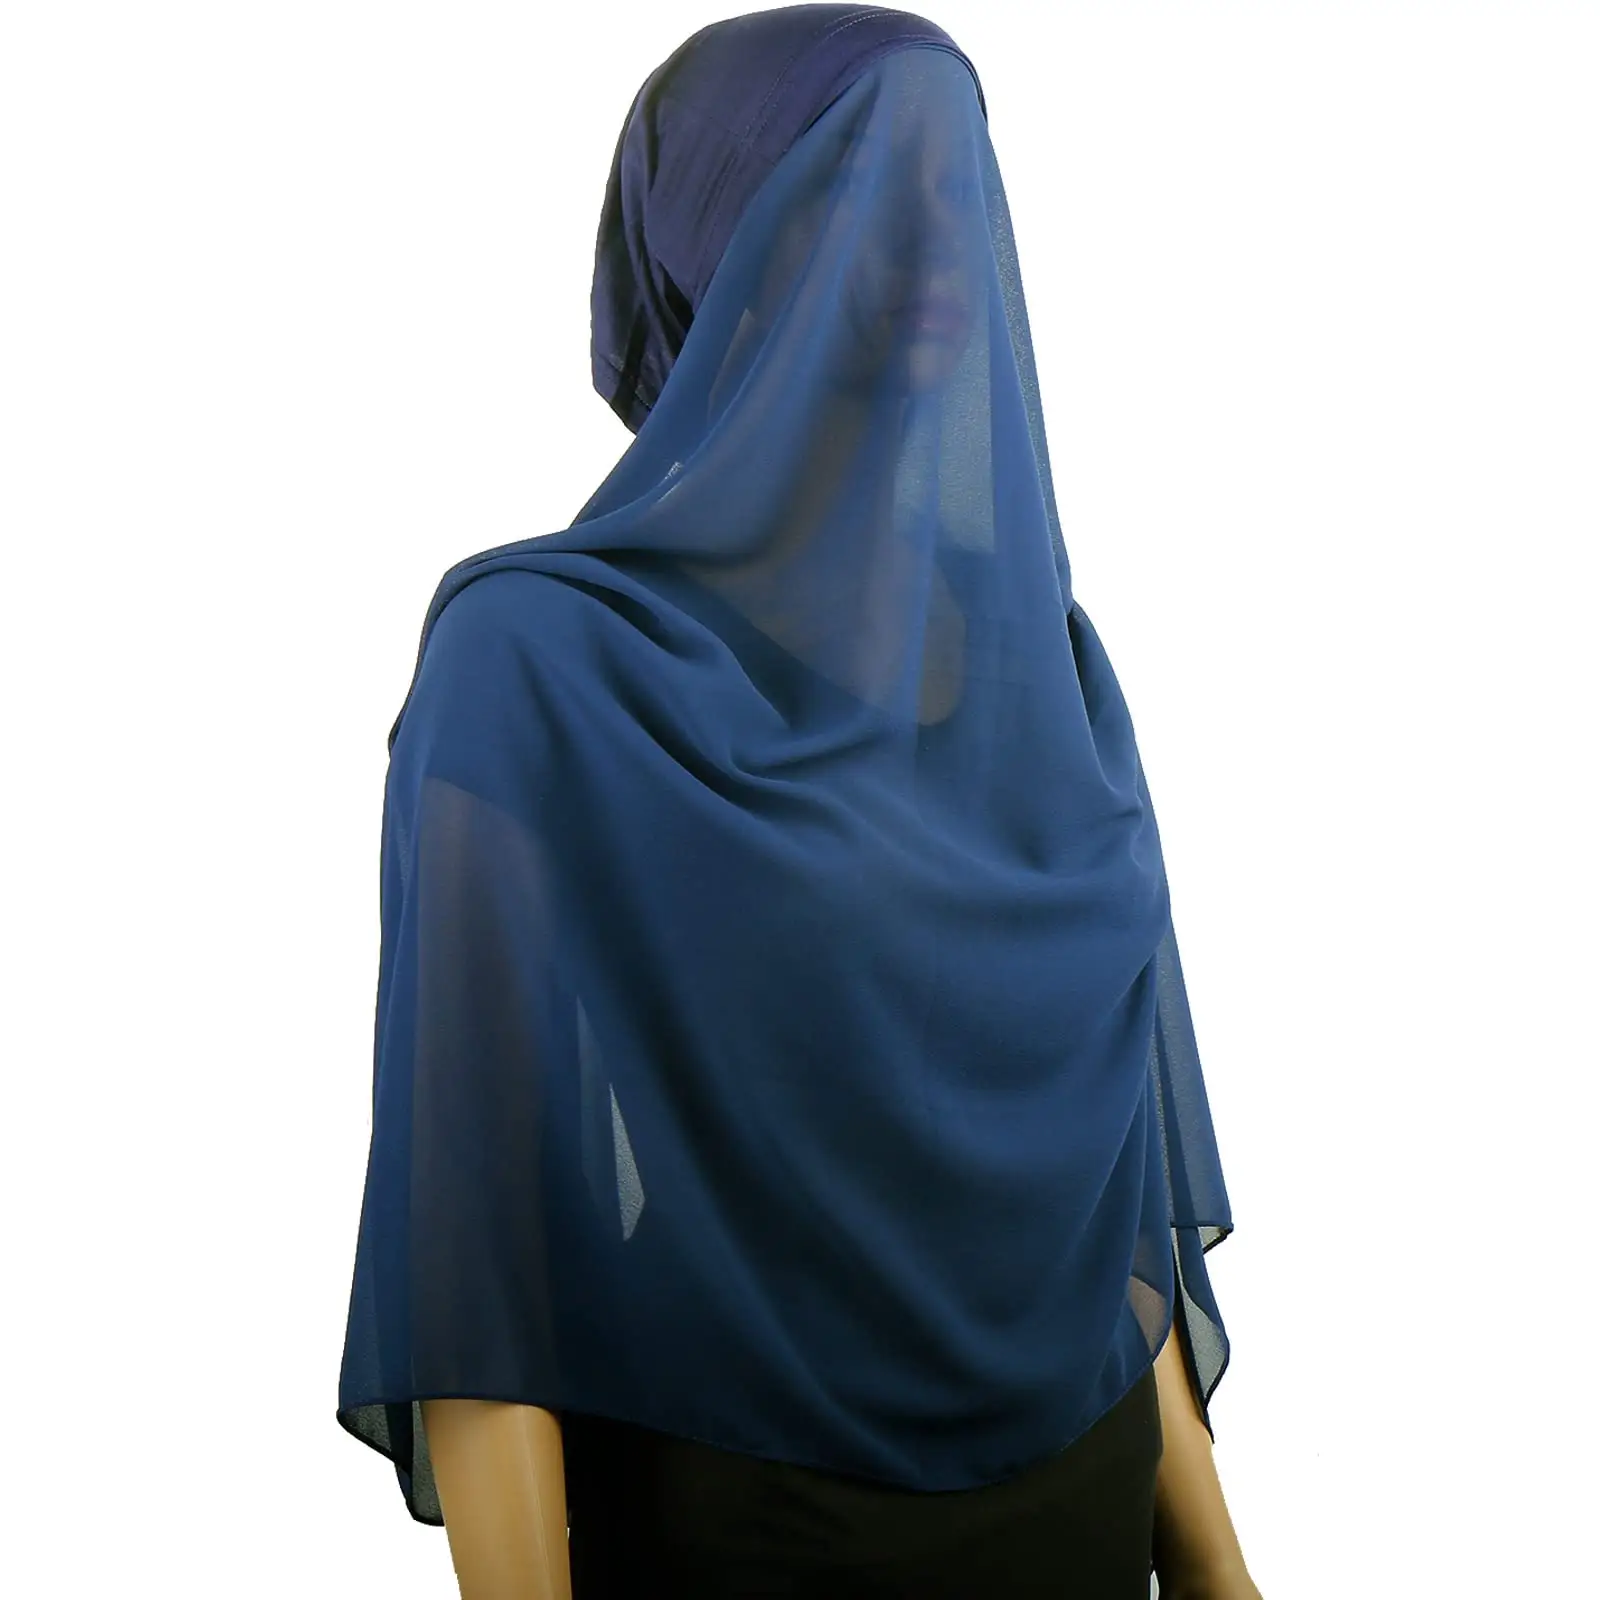 2Pcs Oneness Ready To Wear Scarf Muslim Women Chiffon Hijabs With Jersey Instant Inner Cap Bonnet Head Underscarf Headwrap